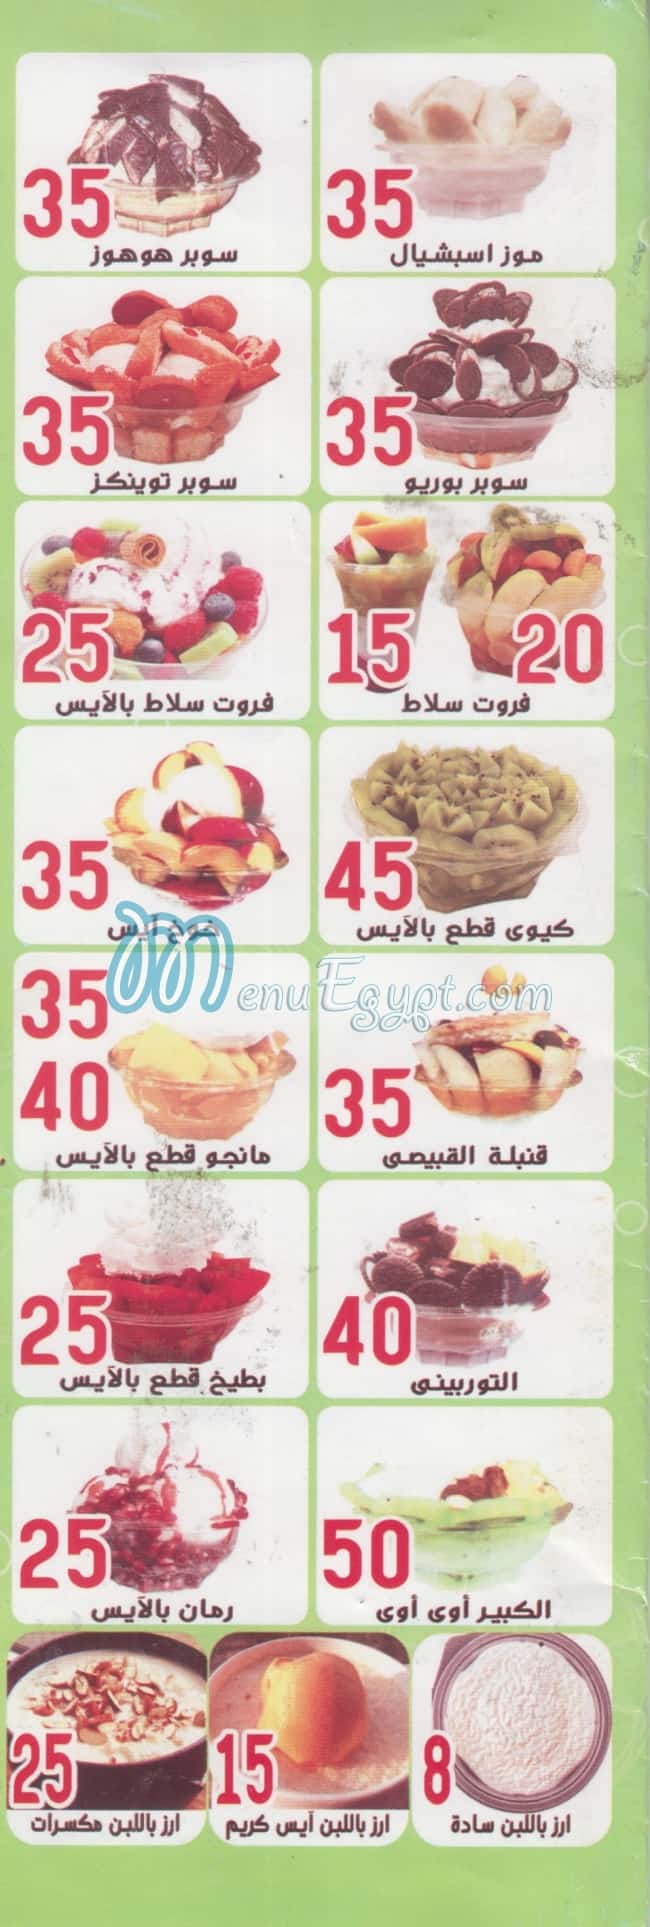 مطعم القبيصي مصر